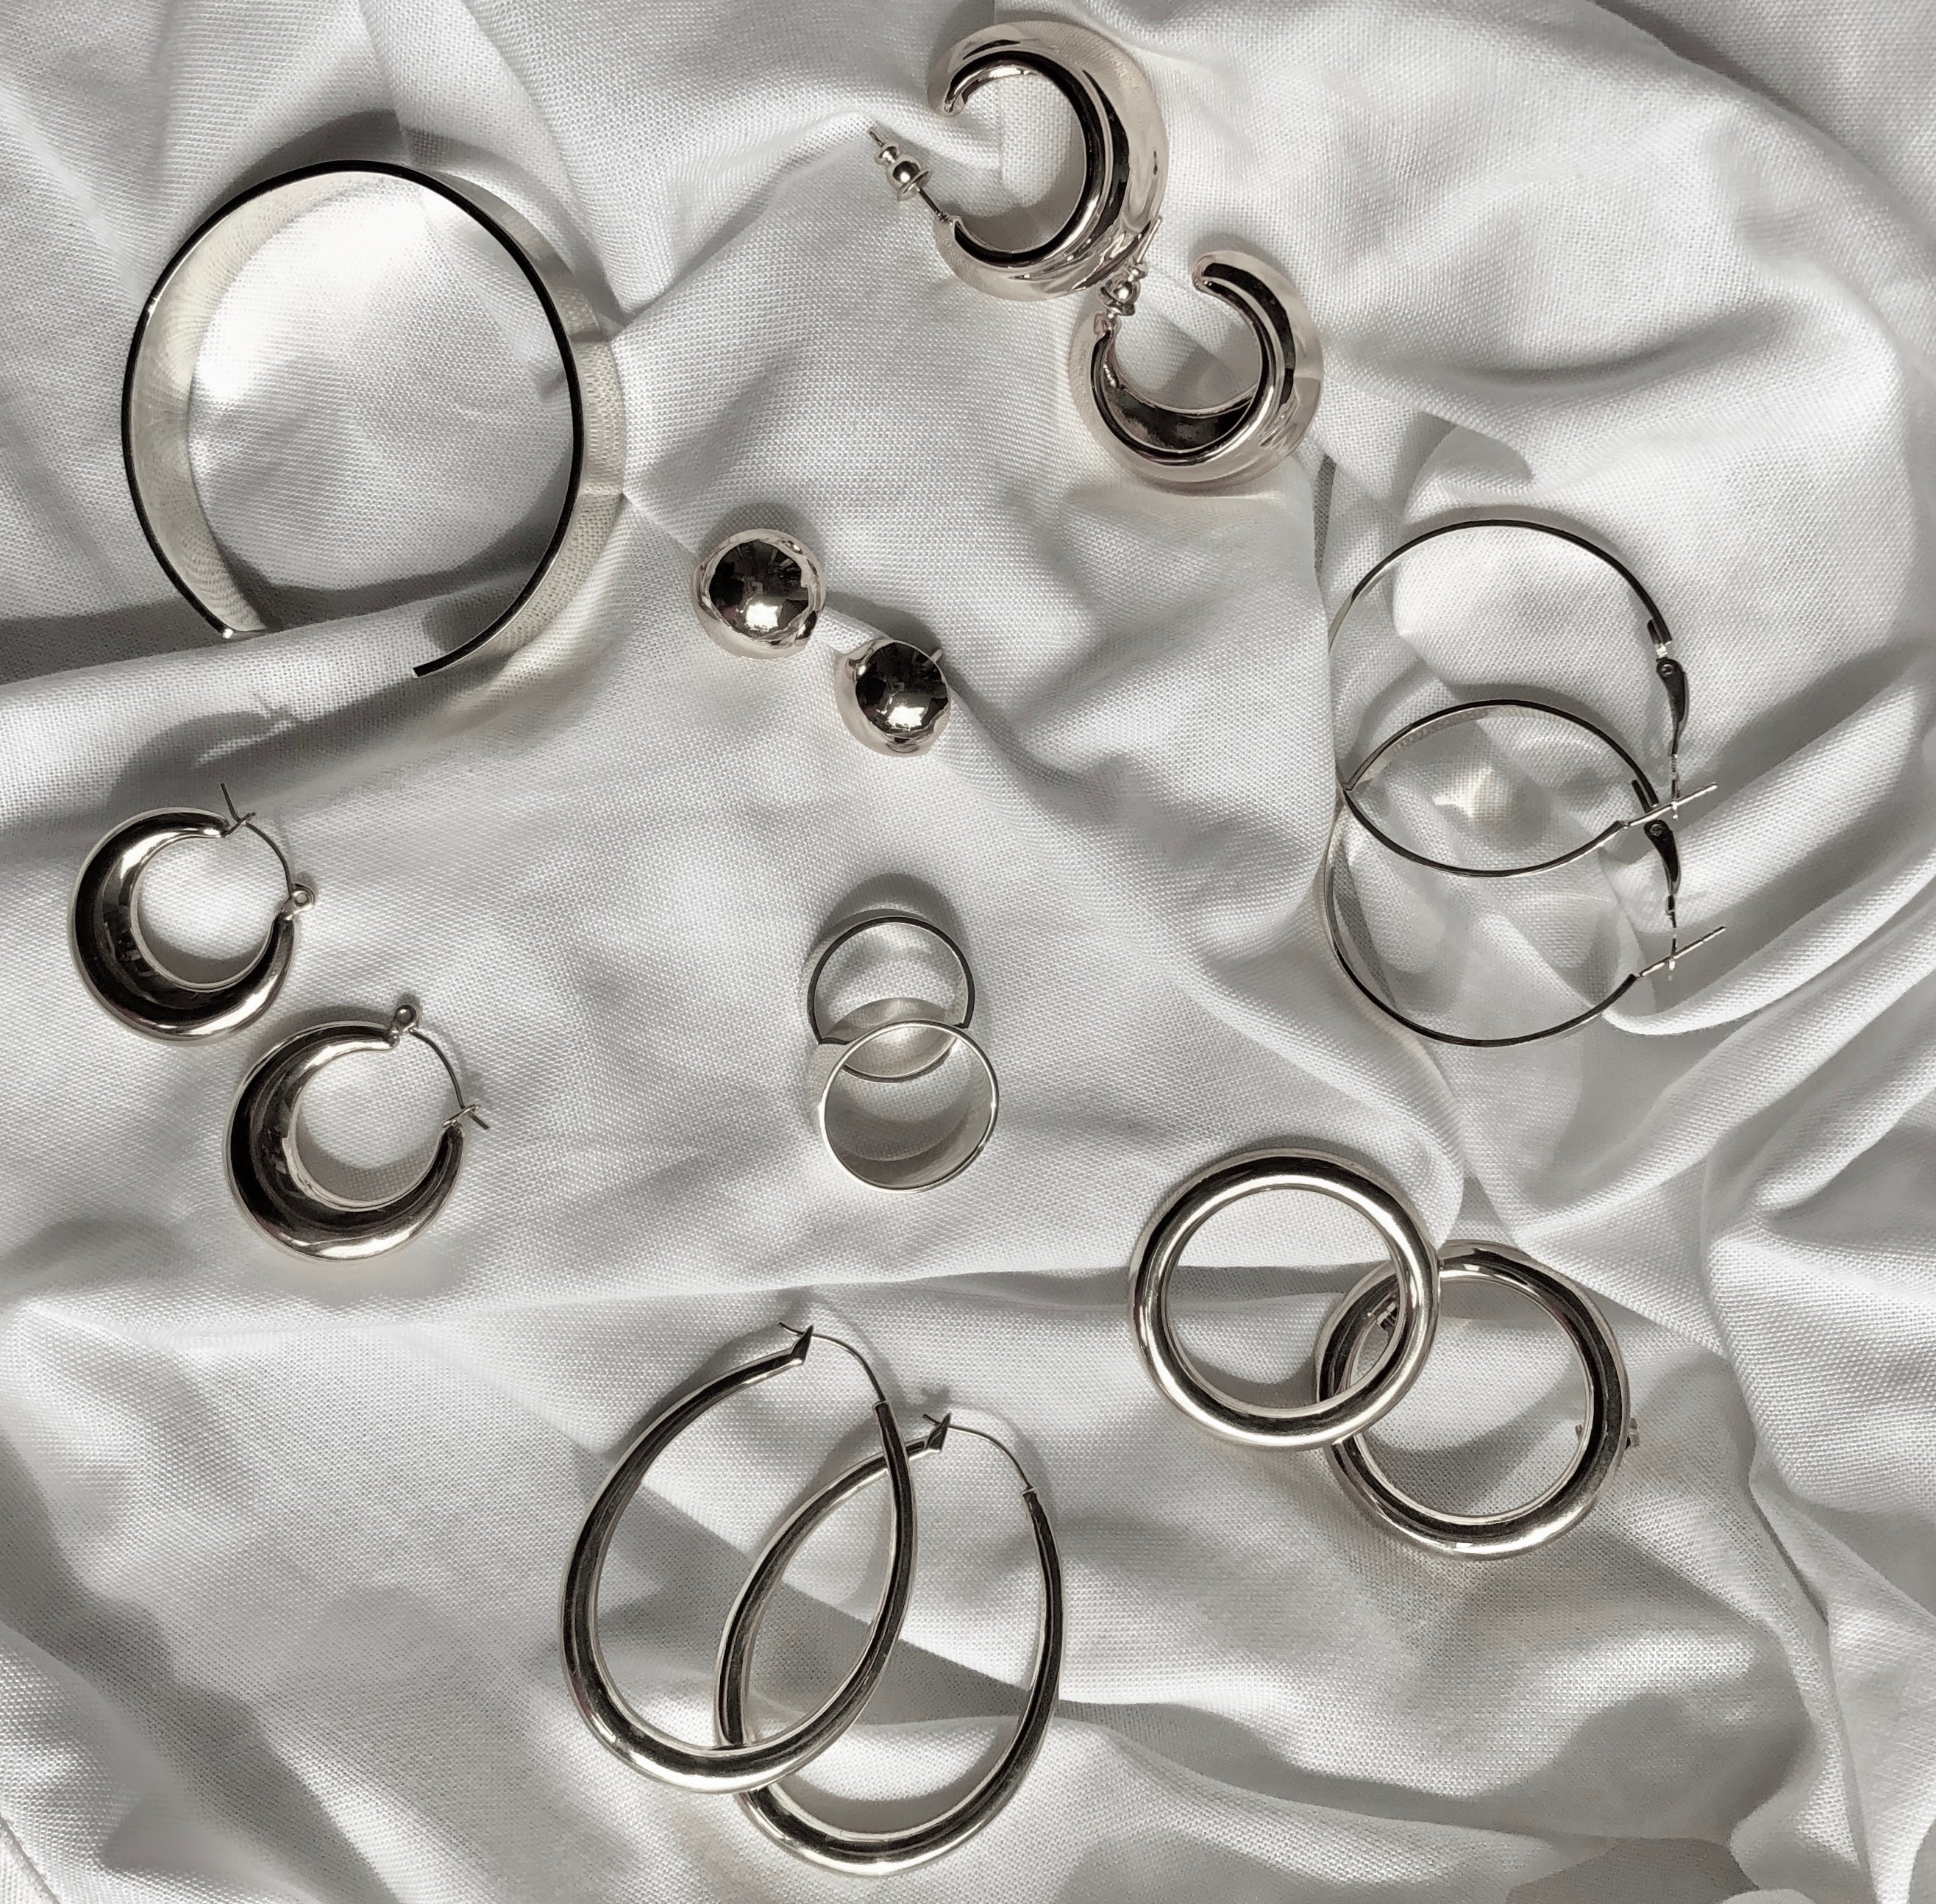 Flat Hoop Earrings by Veronique 925 Silver